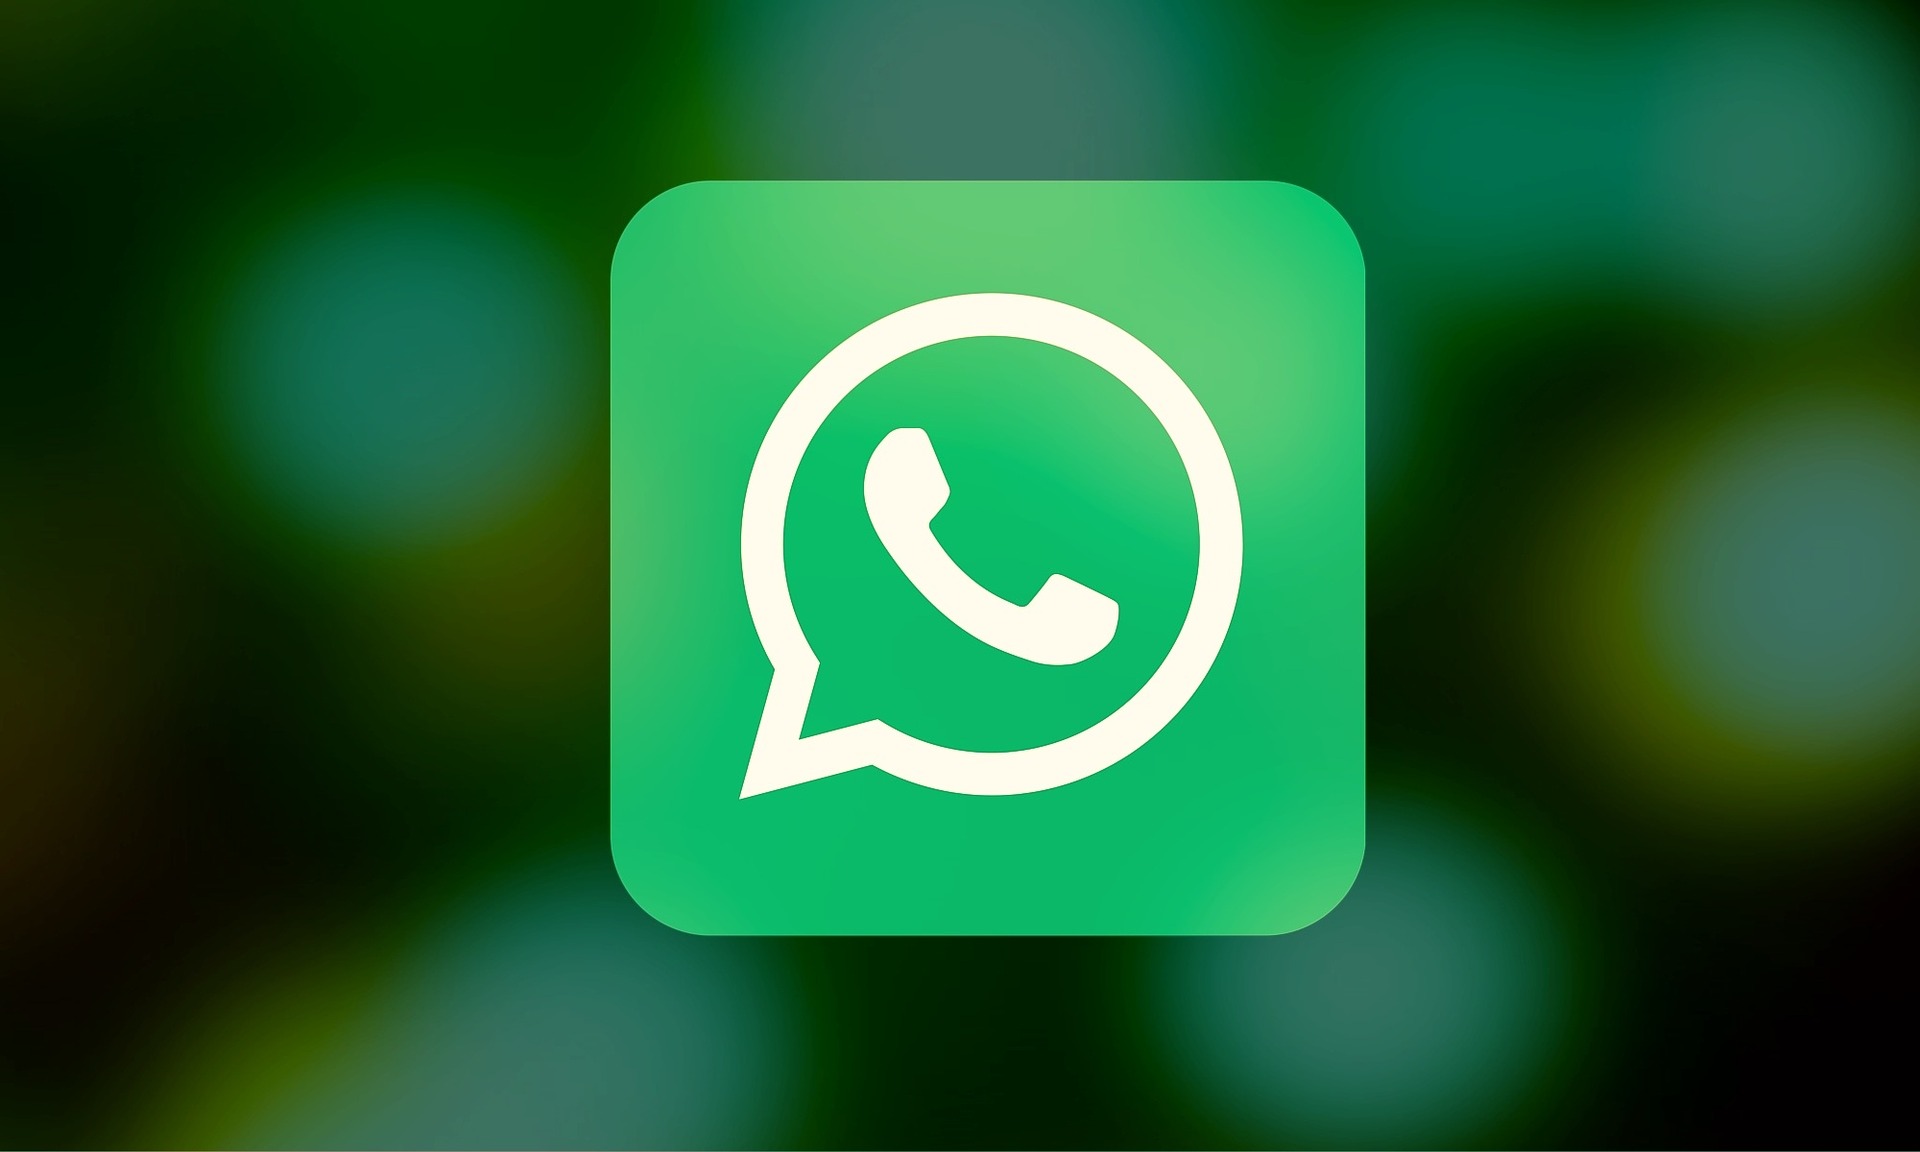  WhatsApp : des chercheurs ont découvert une faille permettant à des tiers de lire et de modifier les messages des autres